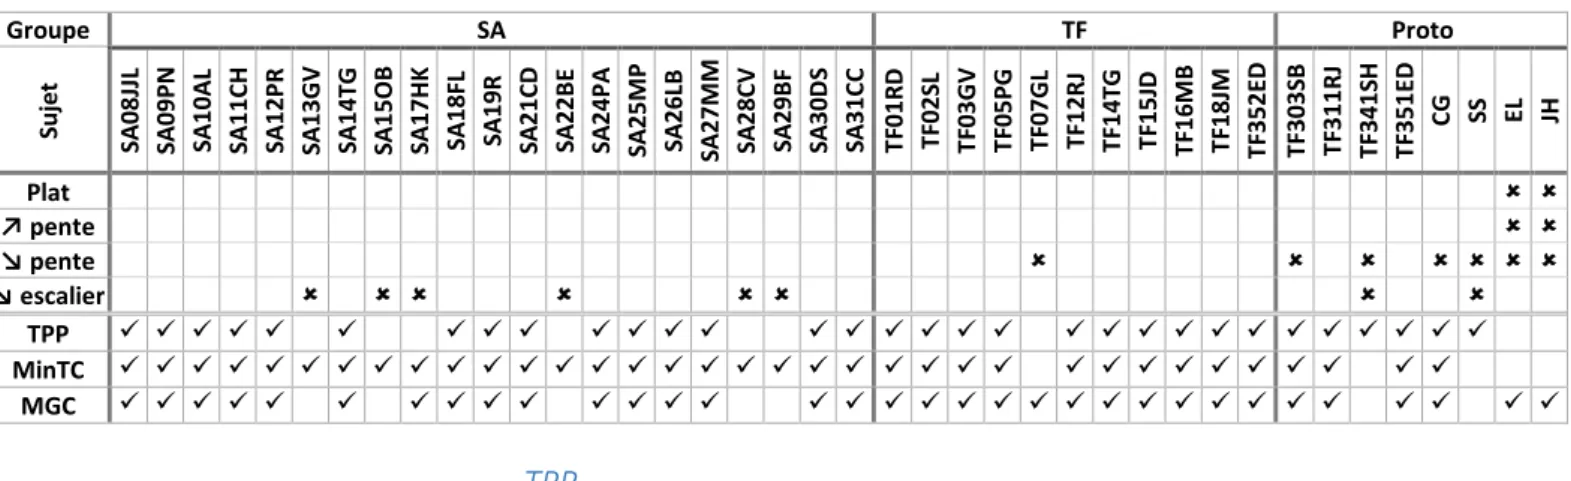 Tableau  I-6  —  Données  des  sujets  utilisés  pour  chaque  paramètre  et  chaque  groupe  (SA=  sujets  non  amputés,  TF=  sujets  amputés transfémoraux équipés d’un genou à microprocesseur  (C-leg™) et d’un pied à restitution d’énergie, Proto= sujets